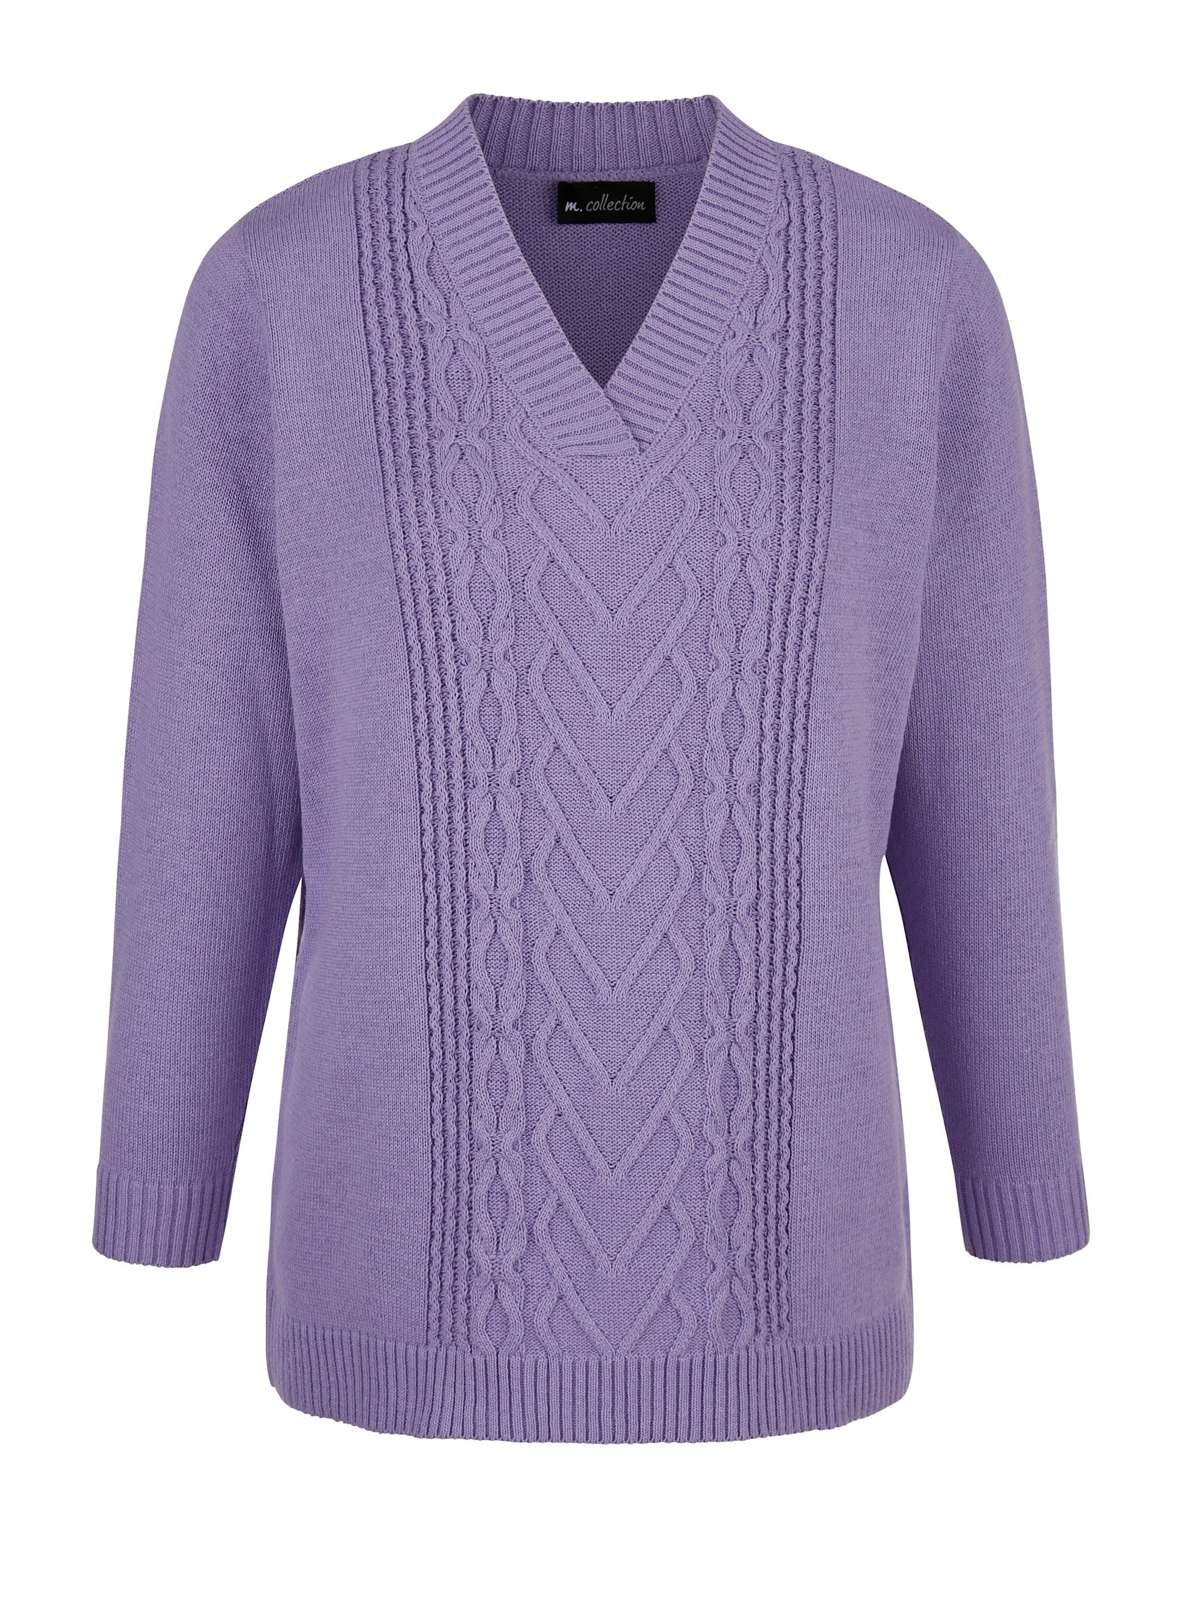 Вязаный пуловер Пуловер с красивым вязаным узором спереди.